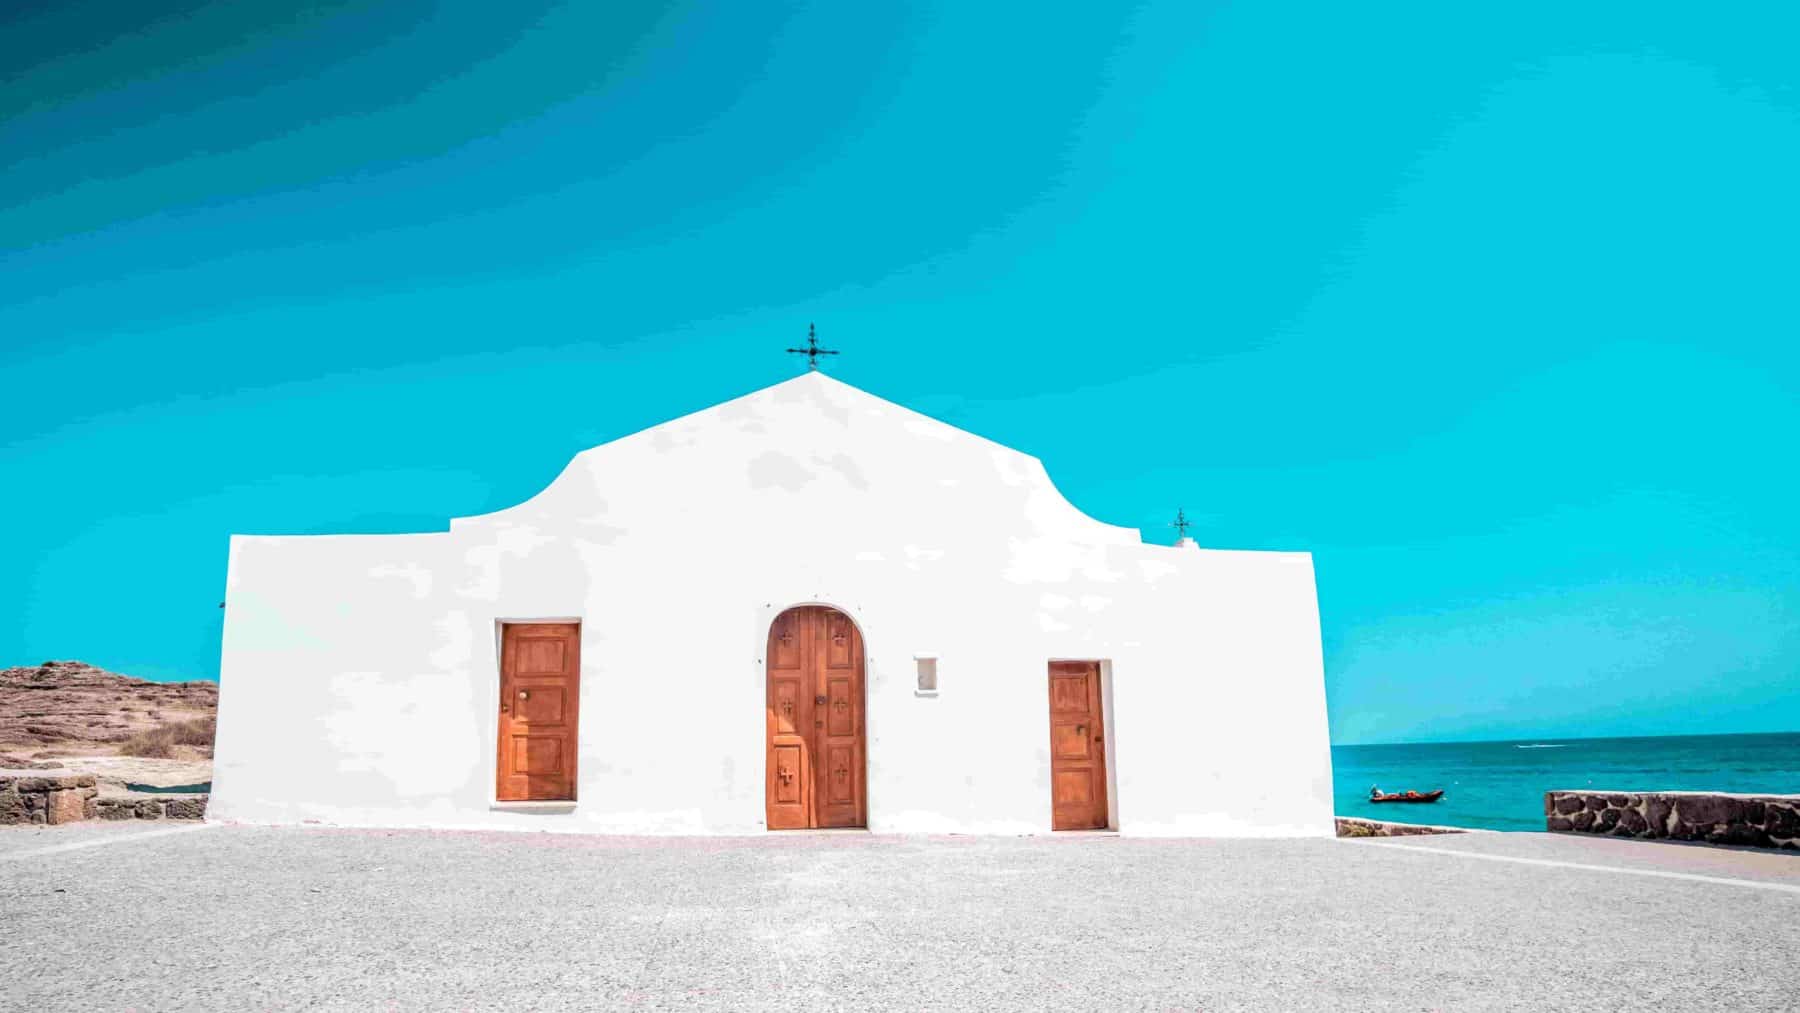 Eine kleine weiße Kapelle mit einer einfachen, geschwungenen Fassade und Holztüren unter einem klaren blauen Himmel, gelegen am Meer, mit einer zerklüfteten Küstenlinie und mehreren Segelyachten im Hintergrund.